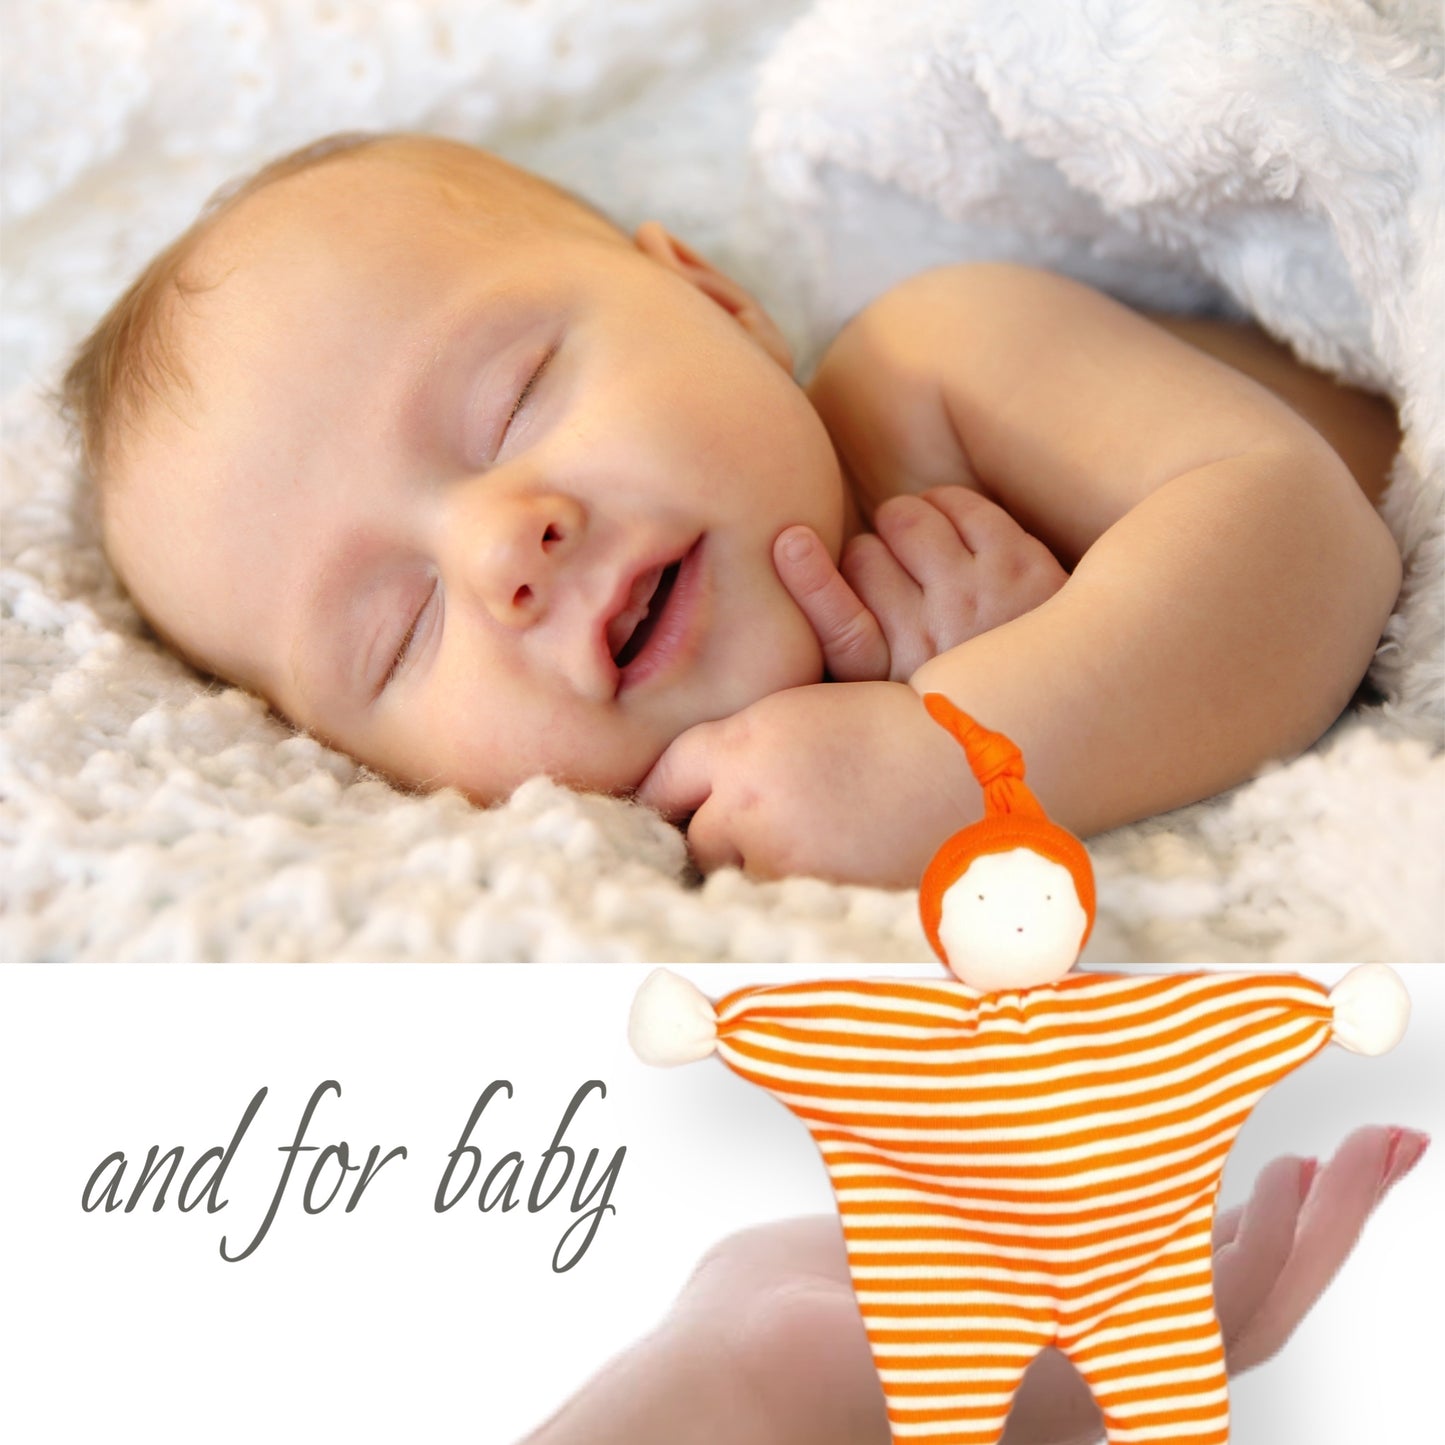 Mum & baby pamper gift box - Orange GOTS baby buddy